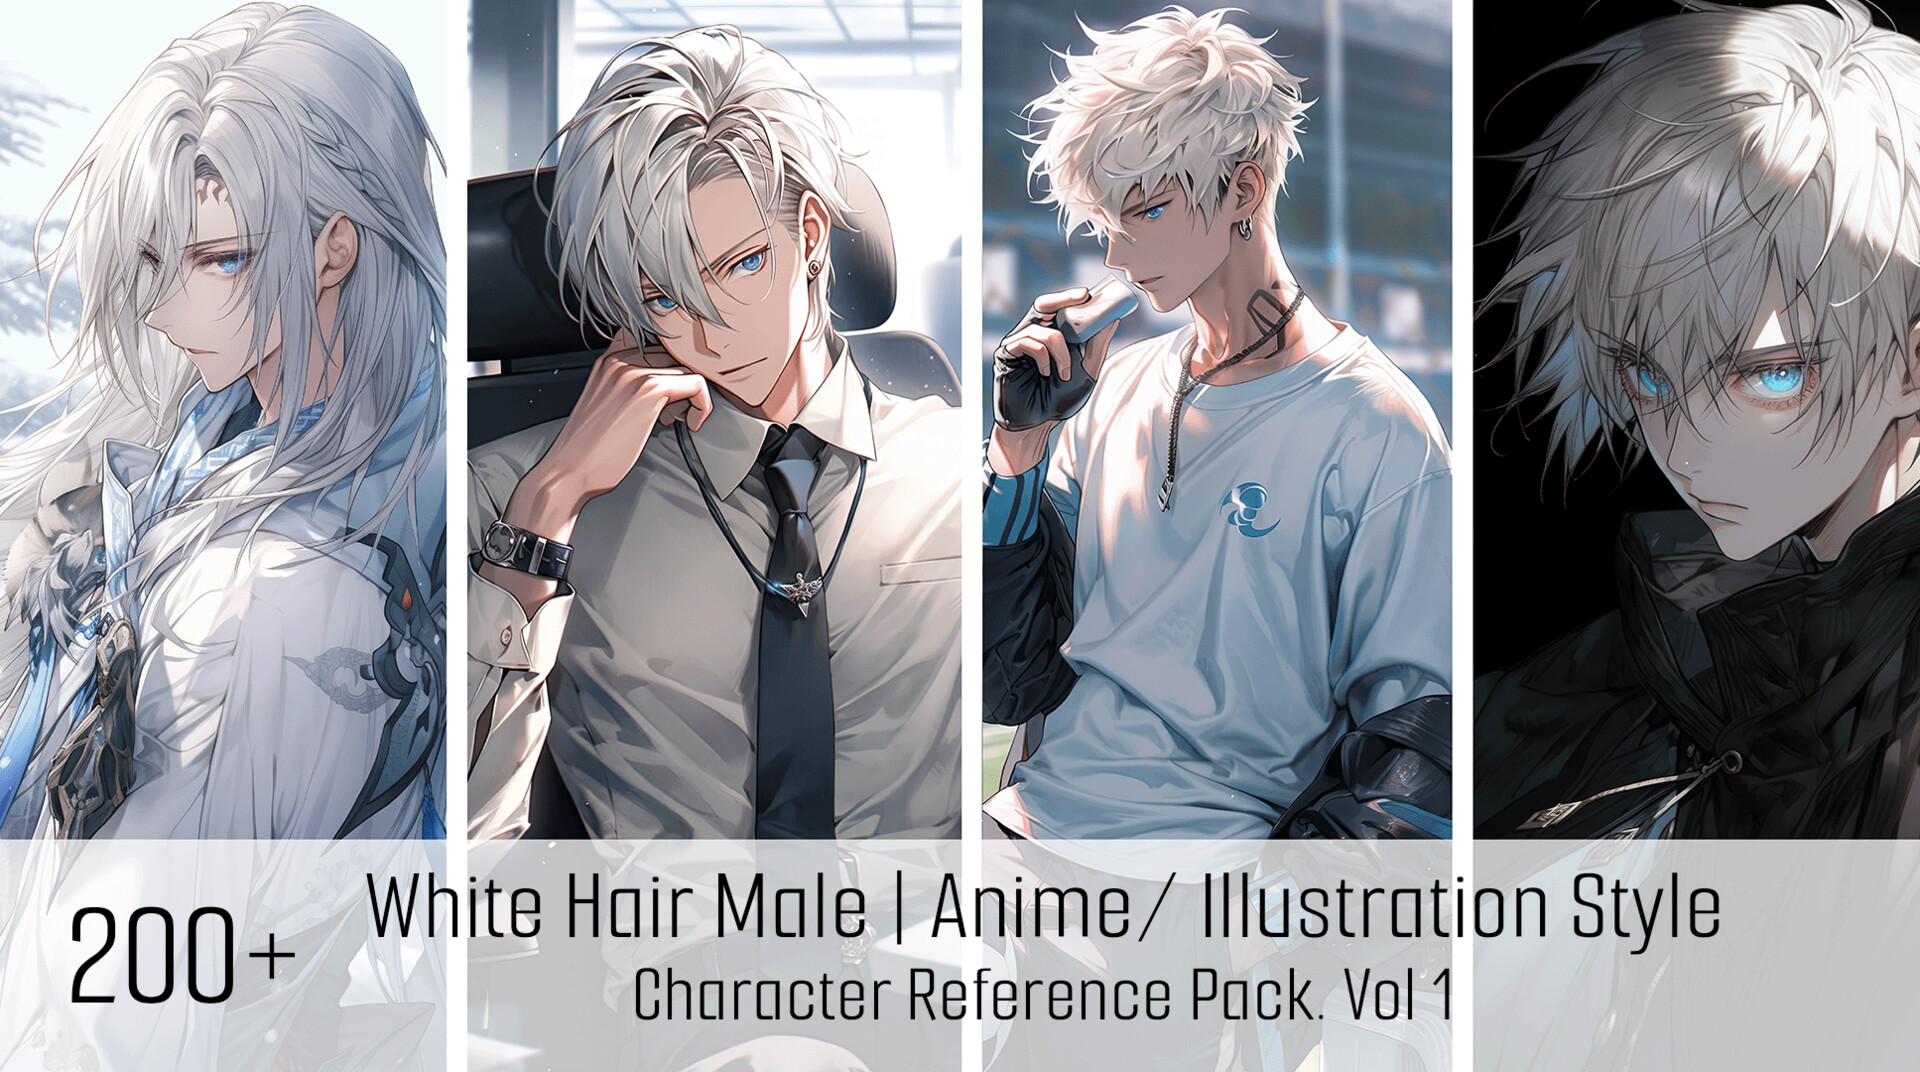 ArtStation - 200+ White Hair Male Anime/ Illustration Style